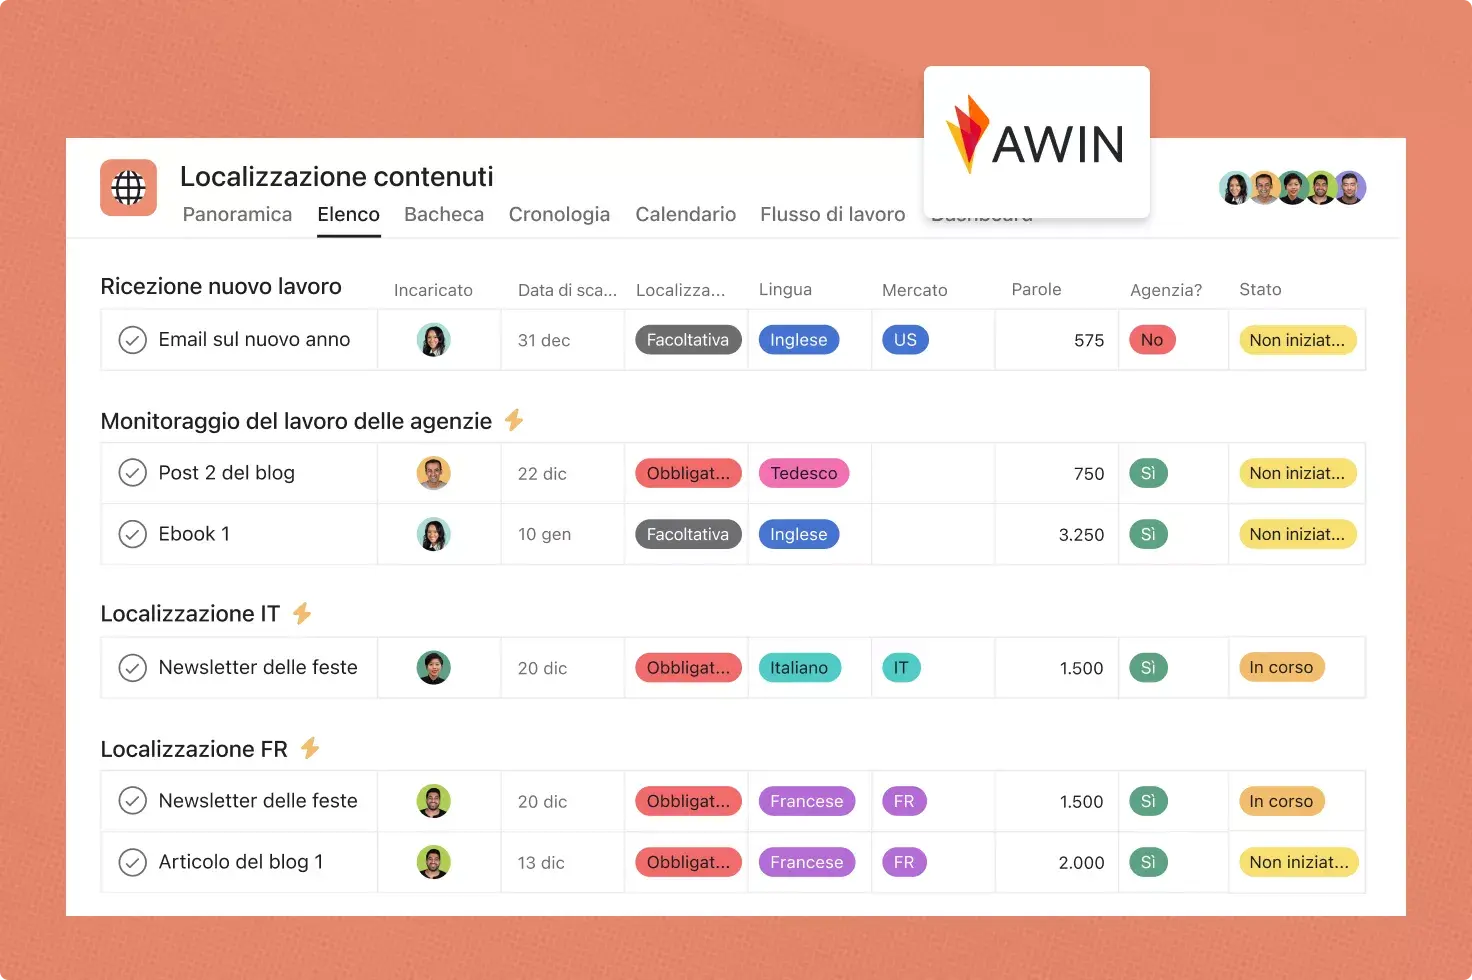 Awin usa Asana per il suo flusso di lavoro relativo alla localizzazione automatizzata